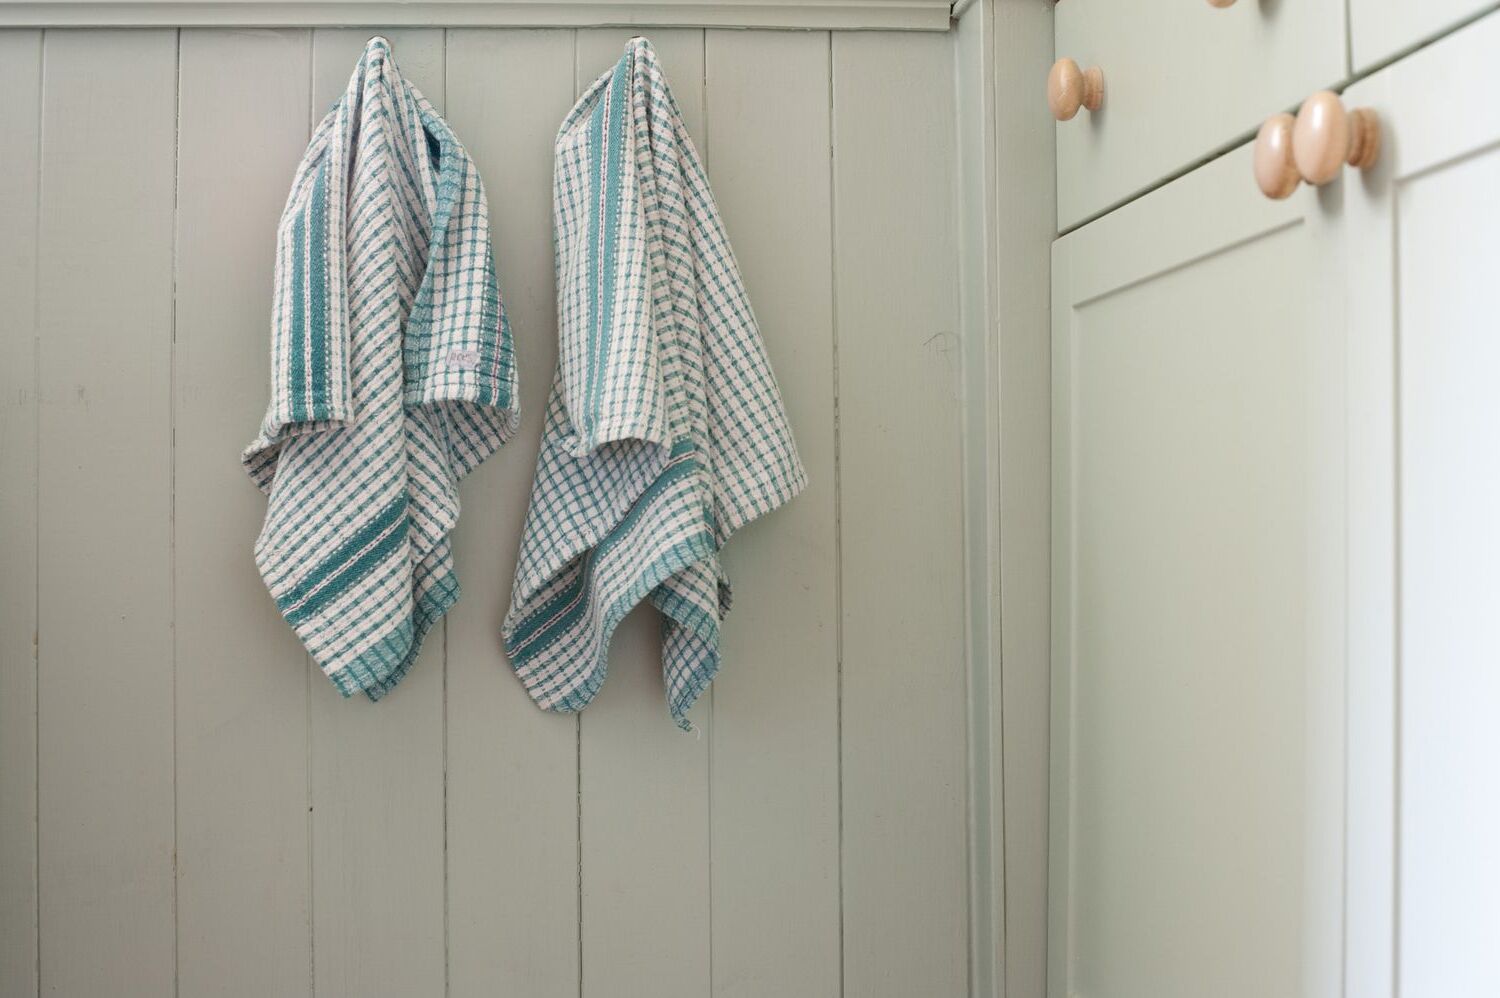 DIY Hanging Dish Towel Pattern